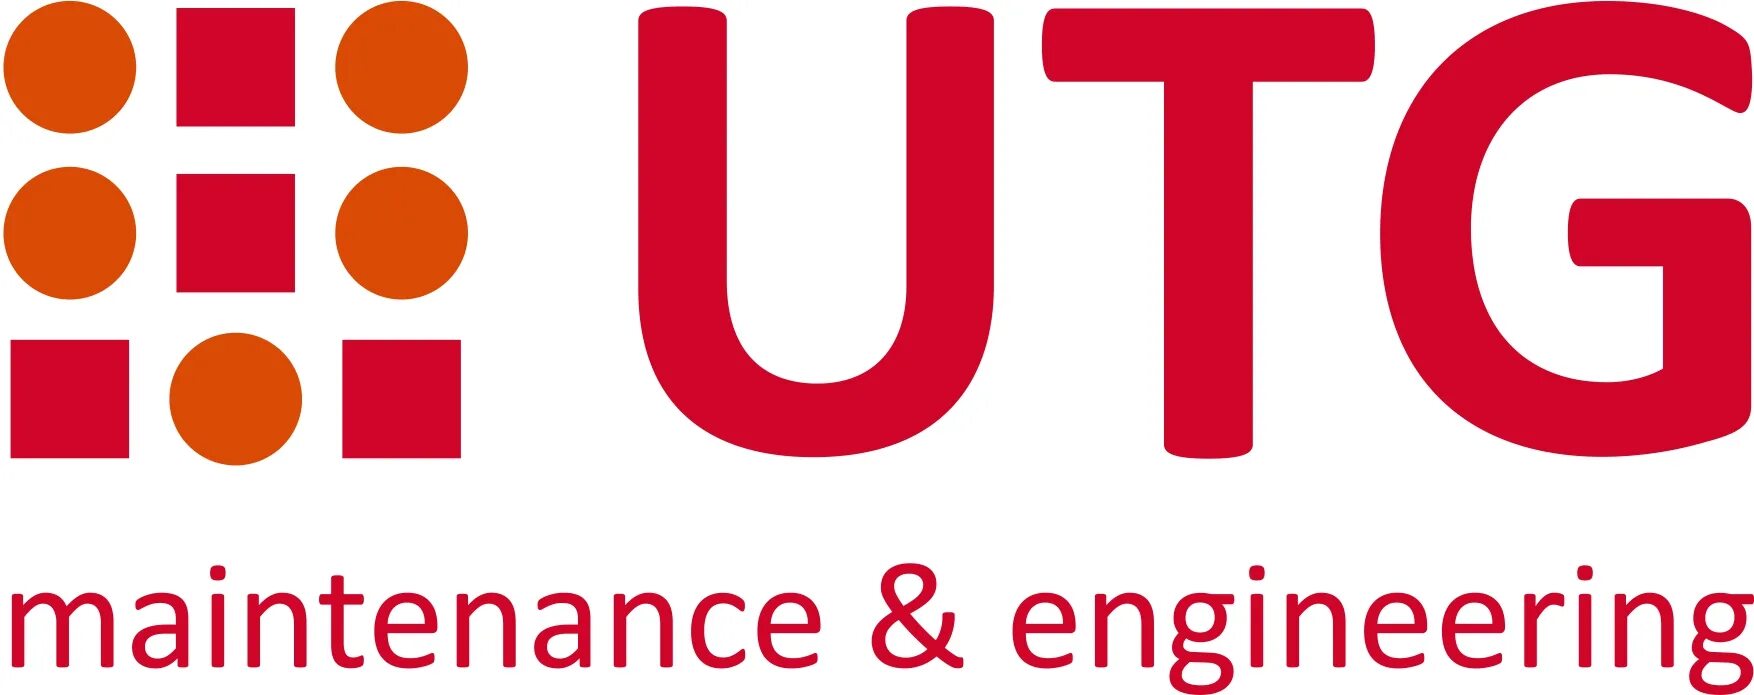 UTG. UTG лого. UTG Aviation services. Ю ти Джи логотип. Aviation services